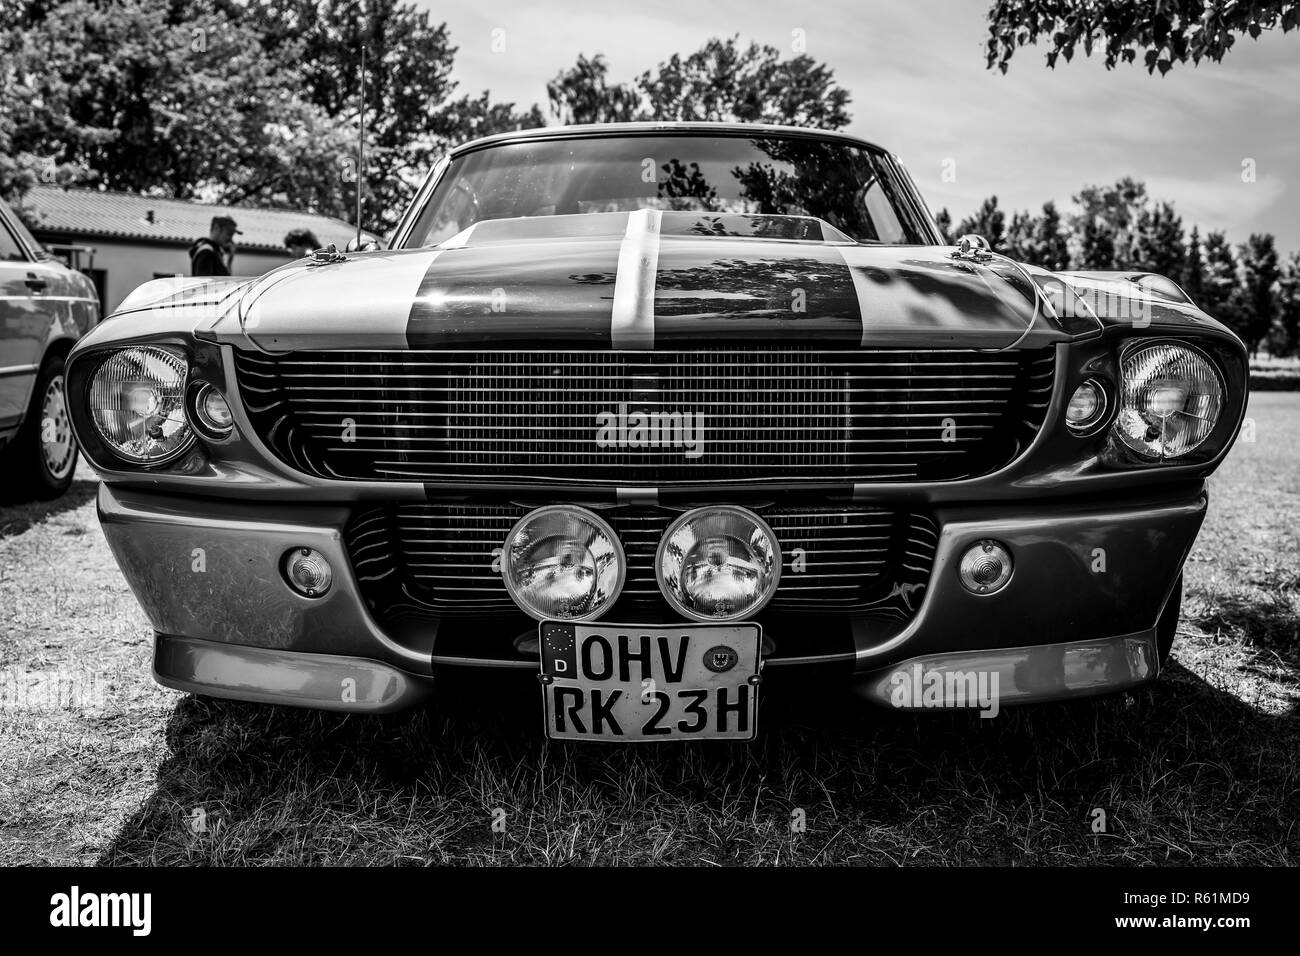 PAAREN IM GLIEN, Germania - 19 Maggio 2018: Pony auto Shelby Cobra GT500, (versione ad alte prestazioni della Ford Mustang). In bianco e nero. Die Oldtimer Sh Foto Stock